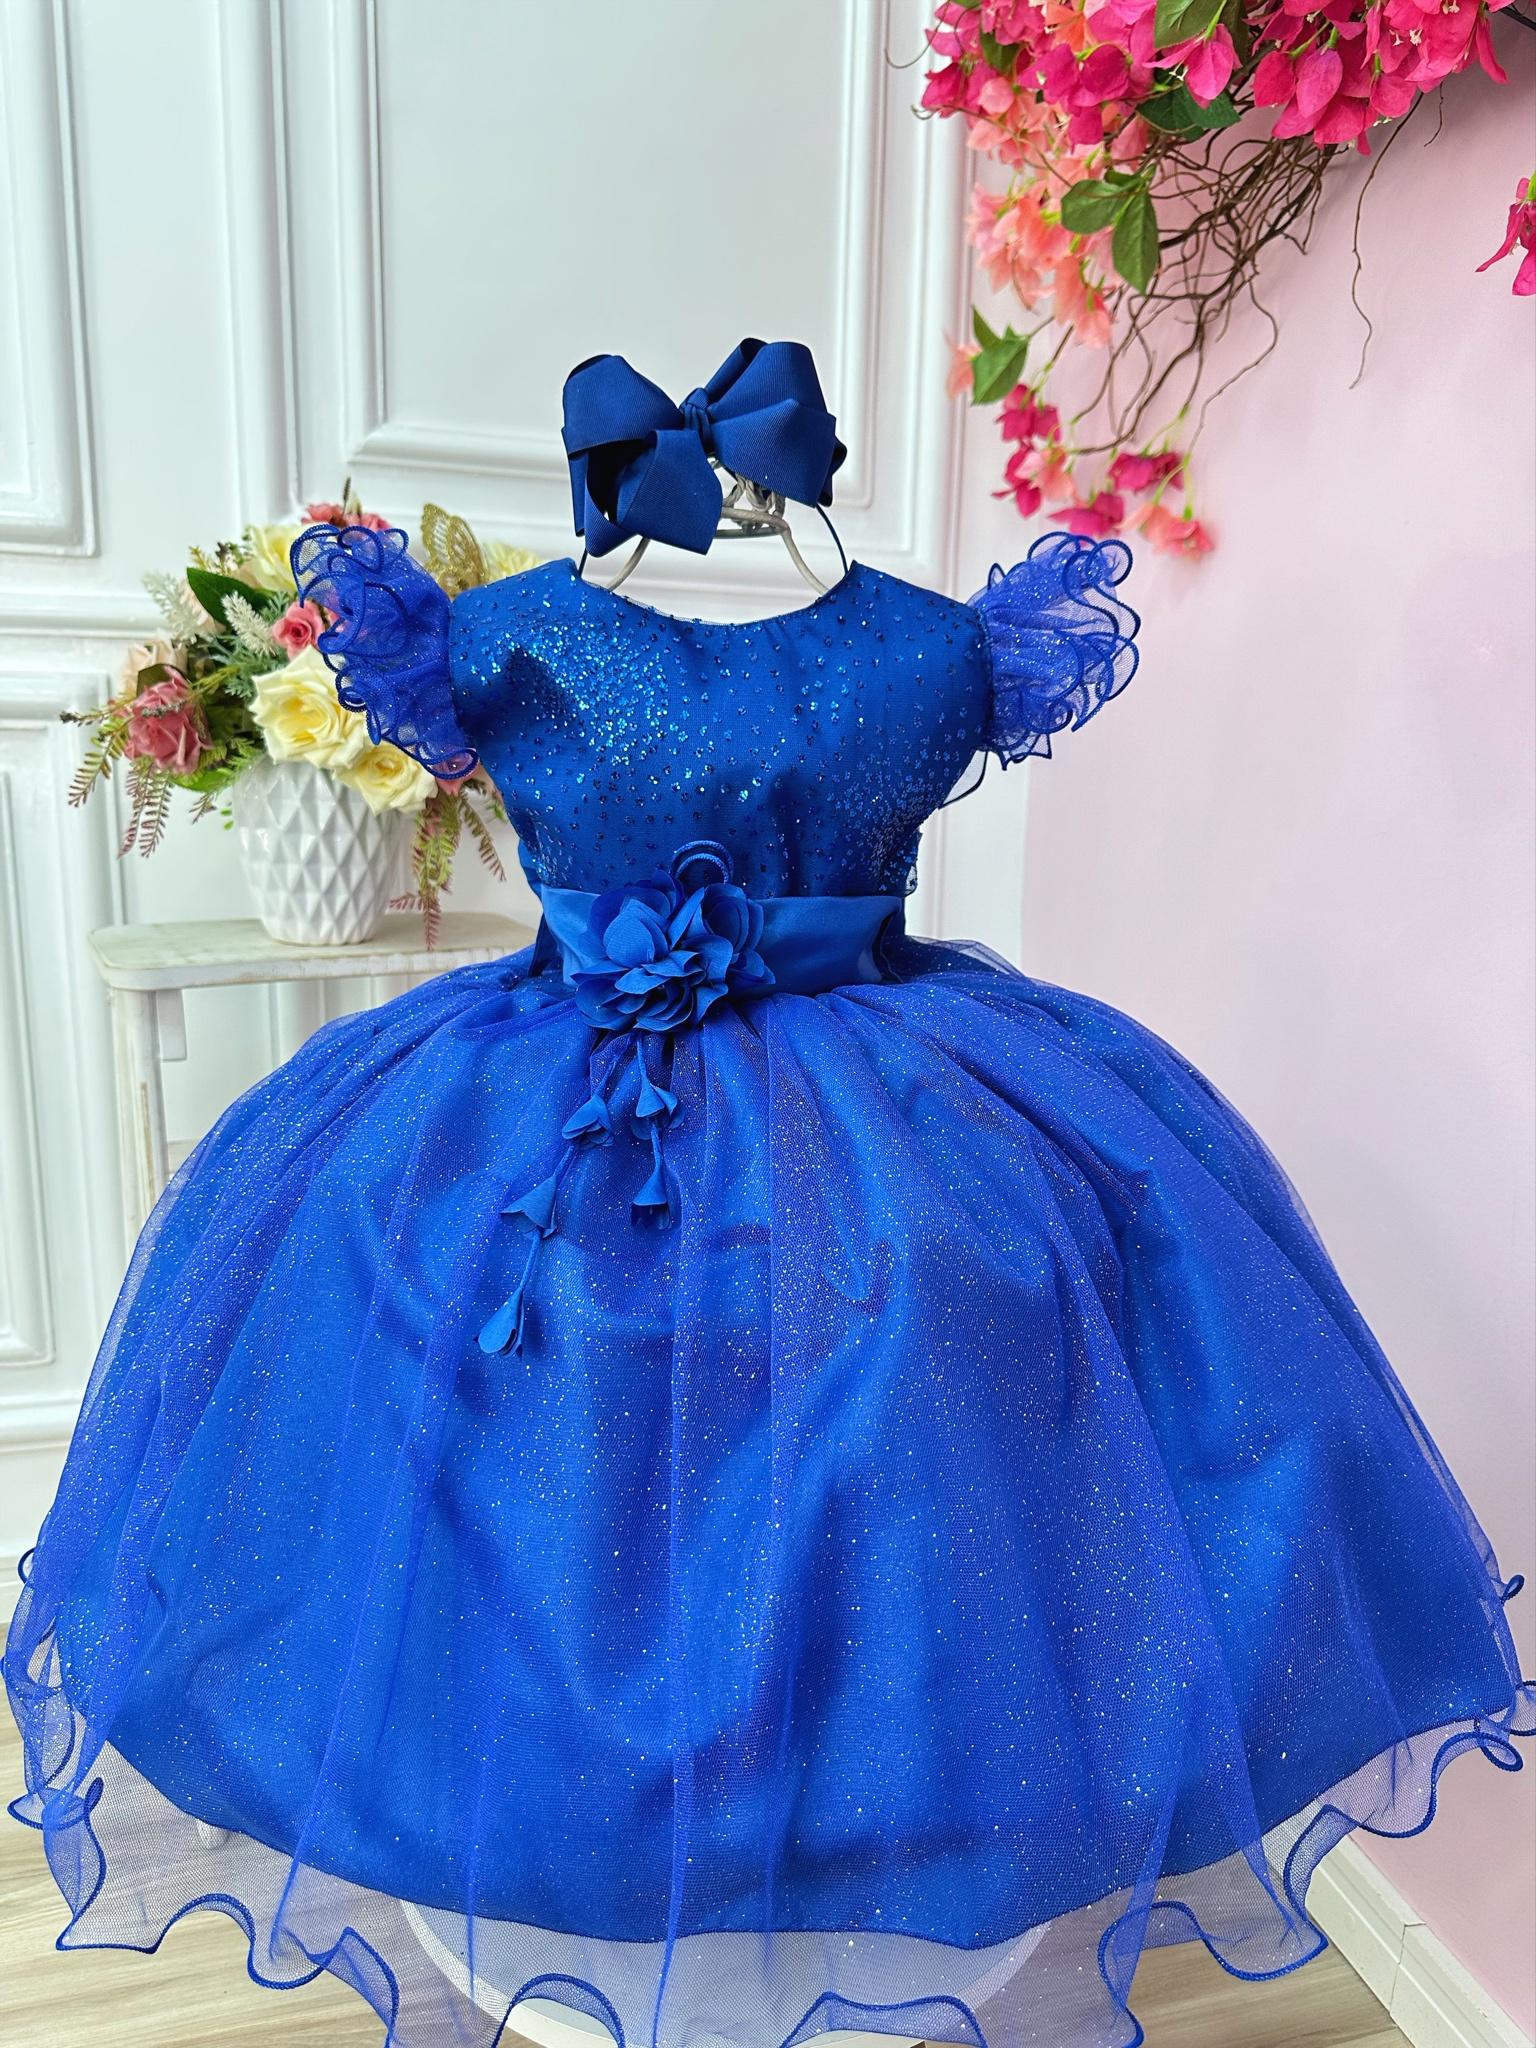 Vestido Infantil Azul Royal Com Glitter e Broche de Flor Luxo